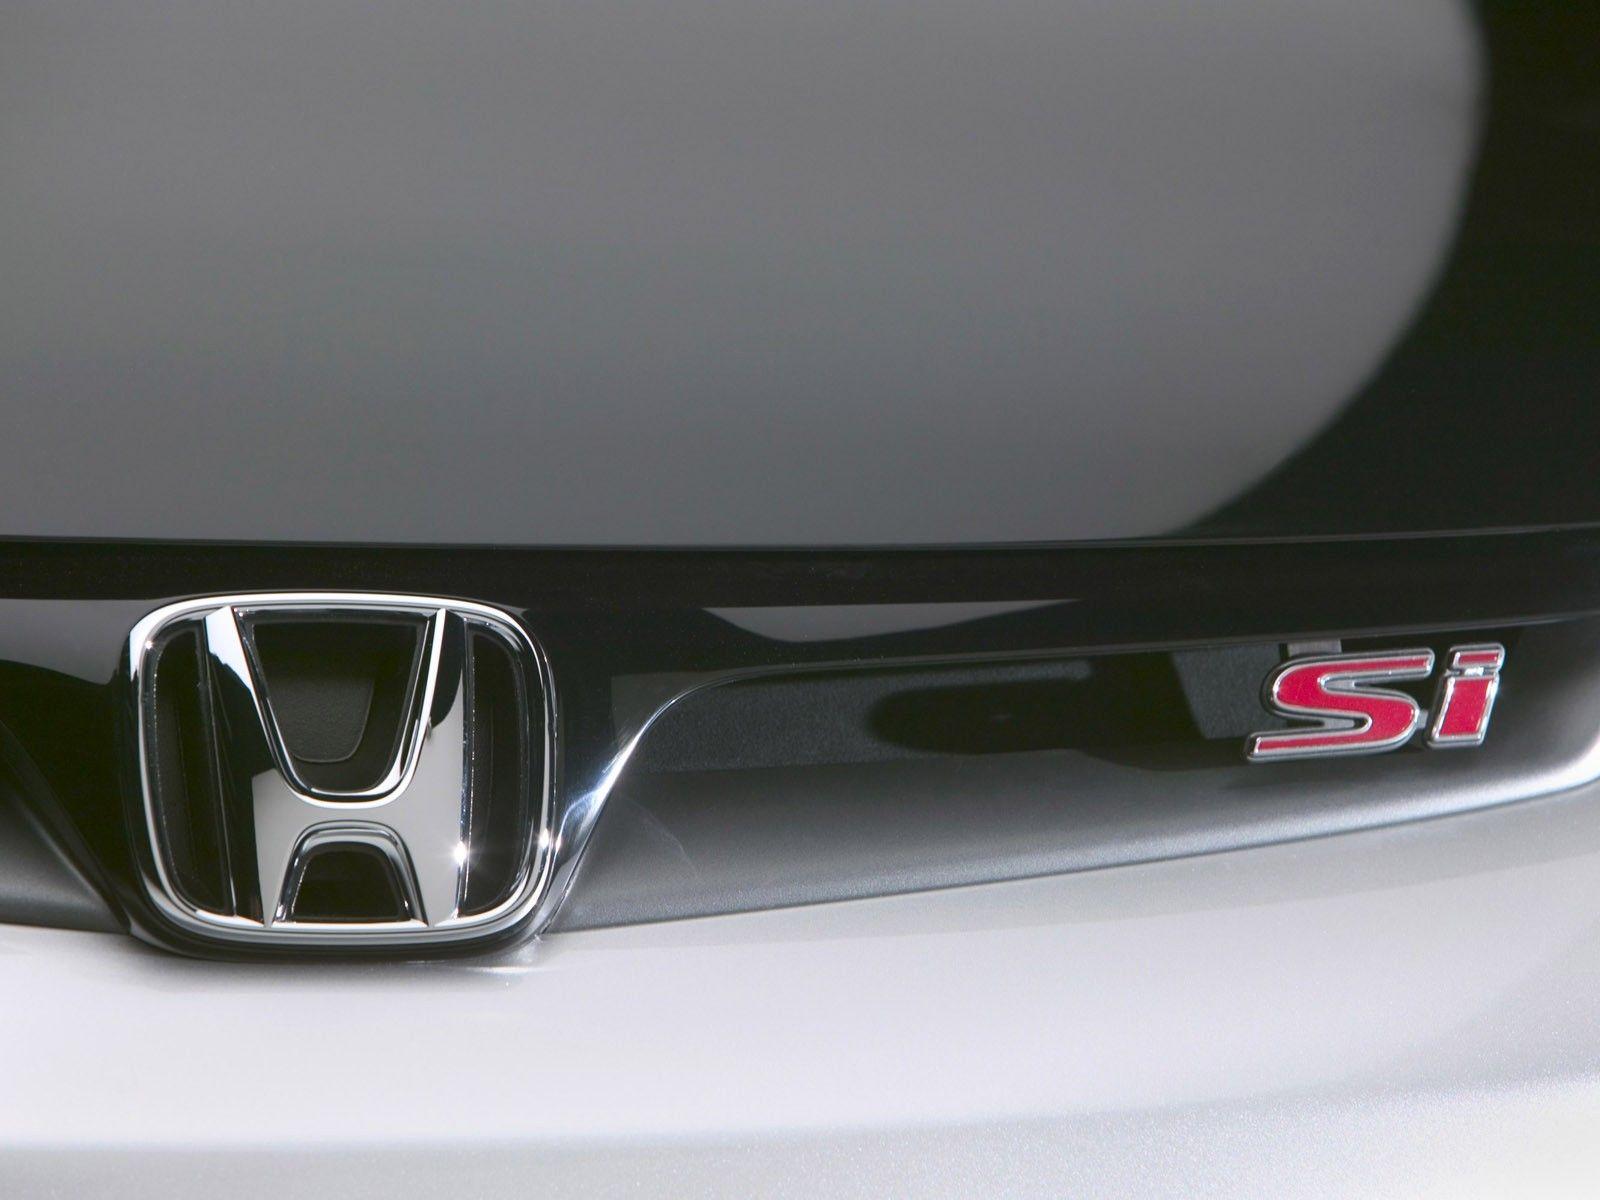 Honda Civic Si Desktop Wallpaper Car Picture